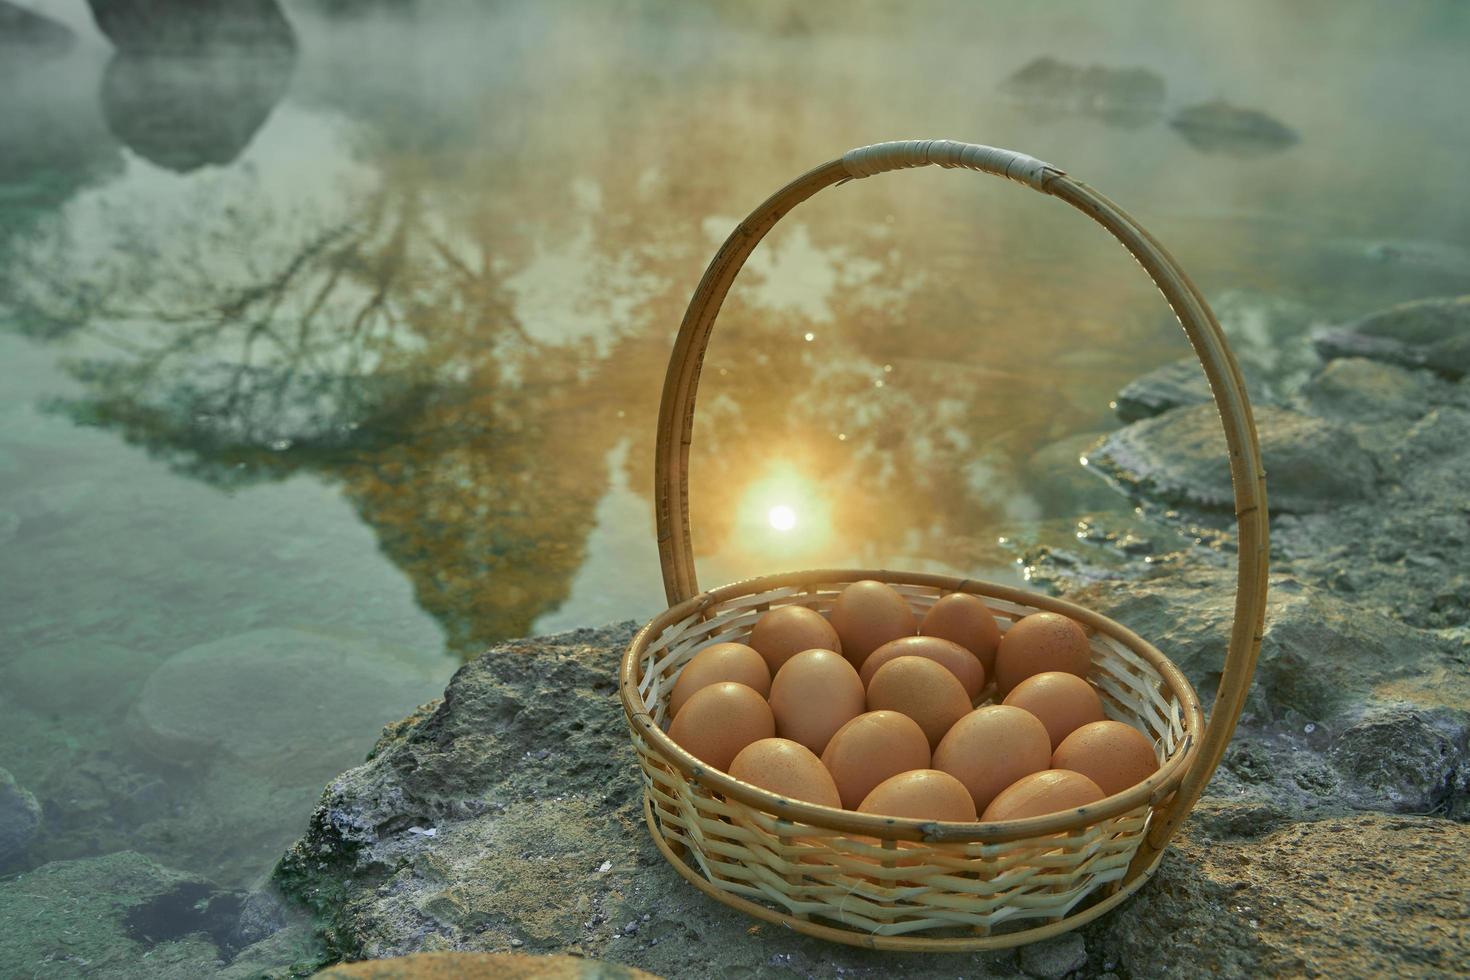 onsen huevos de aguas termales en el parque nacional chae son, lampang tailandia, el método tradicional de hervir huevos en las aguas termales naturales de tailandia. Agua termal japonesa vapor hervir los huevos dentro de la cesta foto